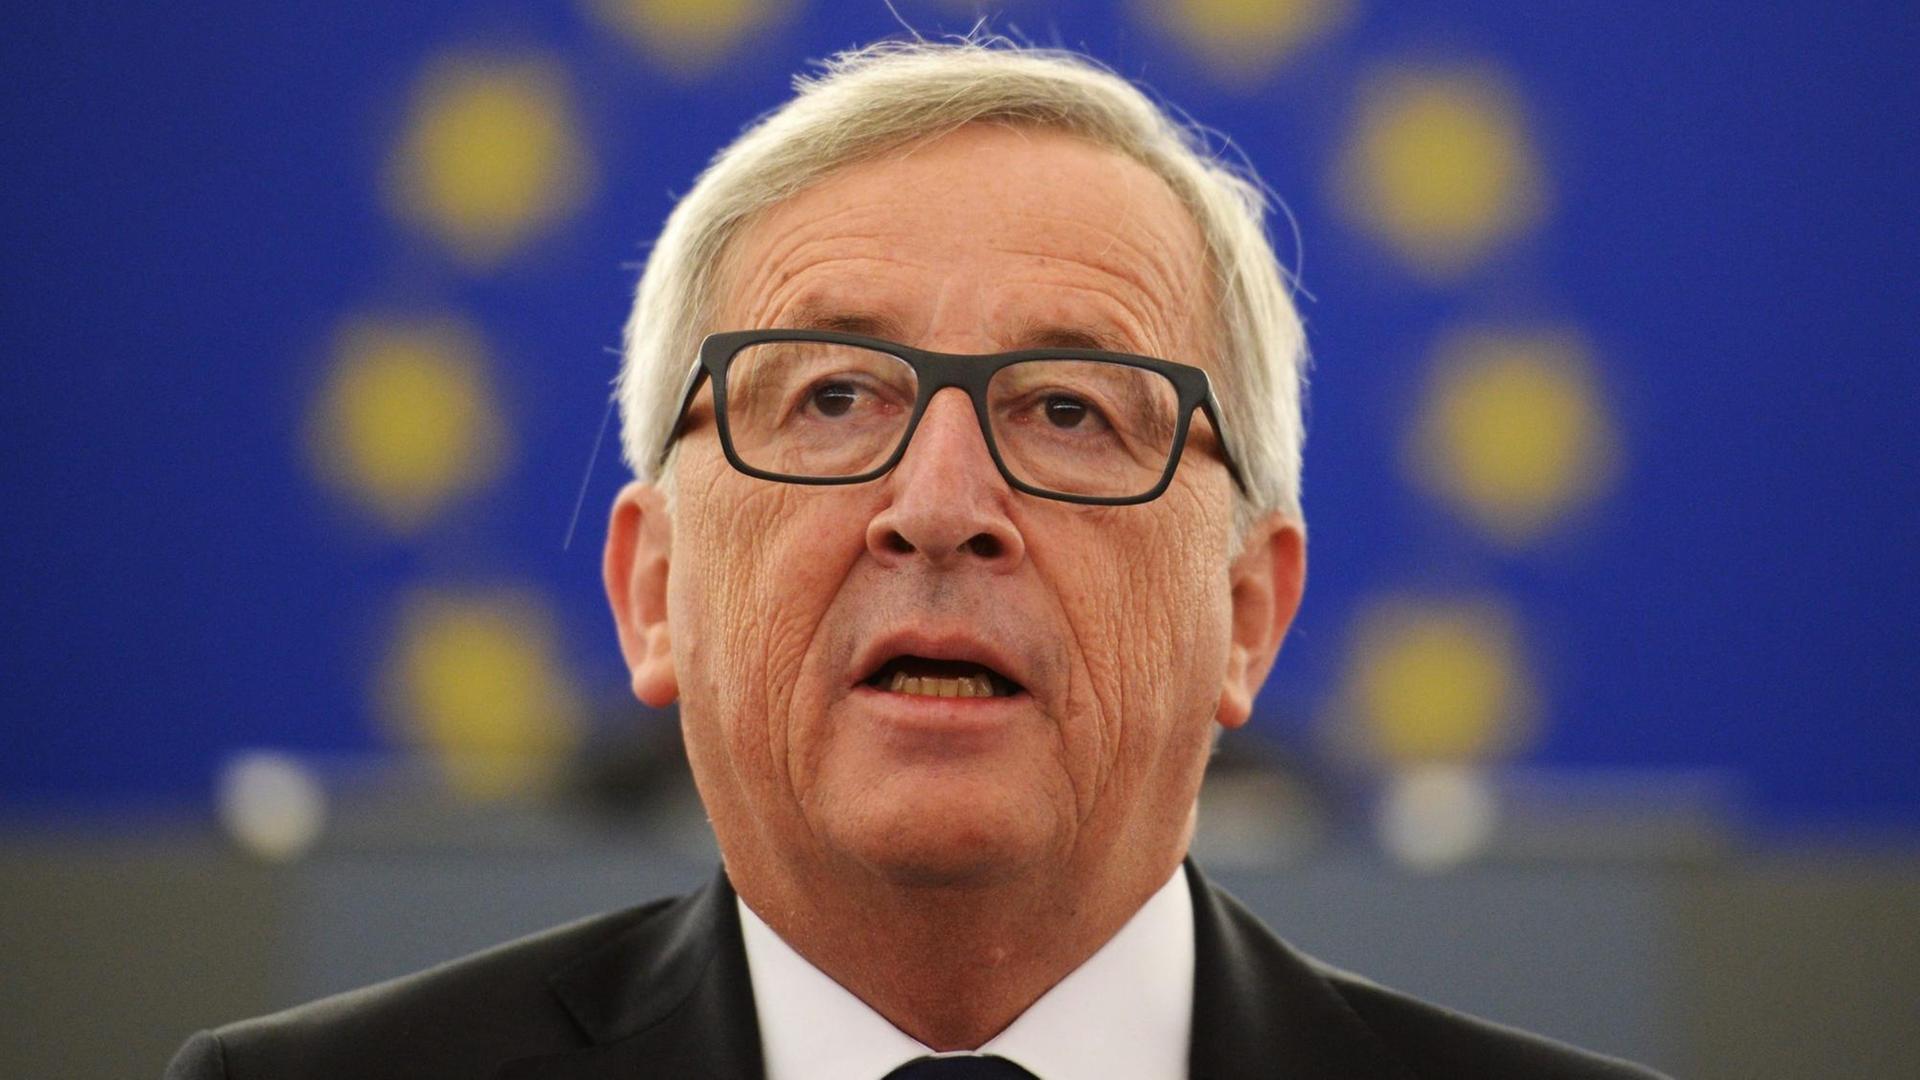 Juncker ist so fotografiert, dass sein Kopf von den europäischen Sternen umrahmt zu sein scheint, die auf einem blauen Banner hinter ihm zu sehen sind.